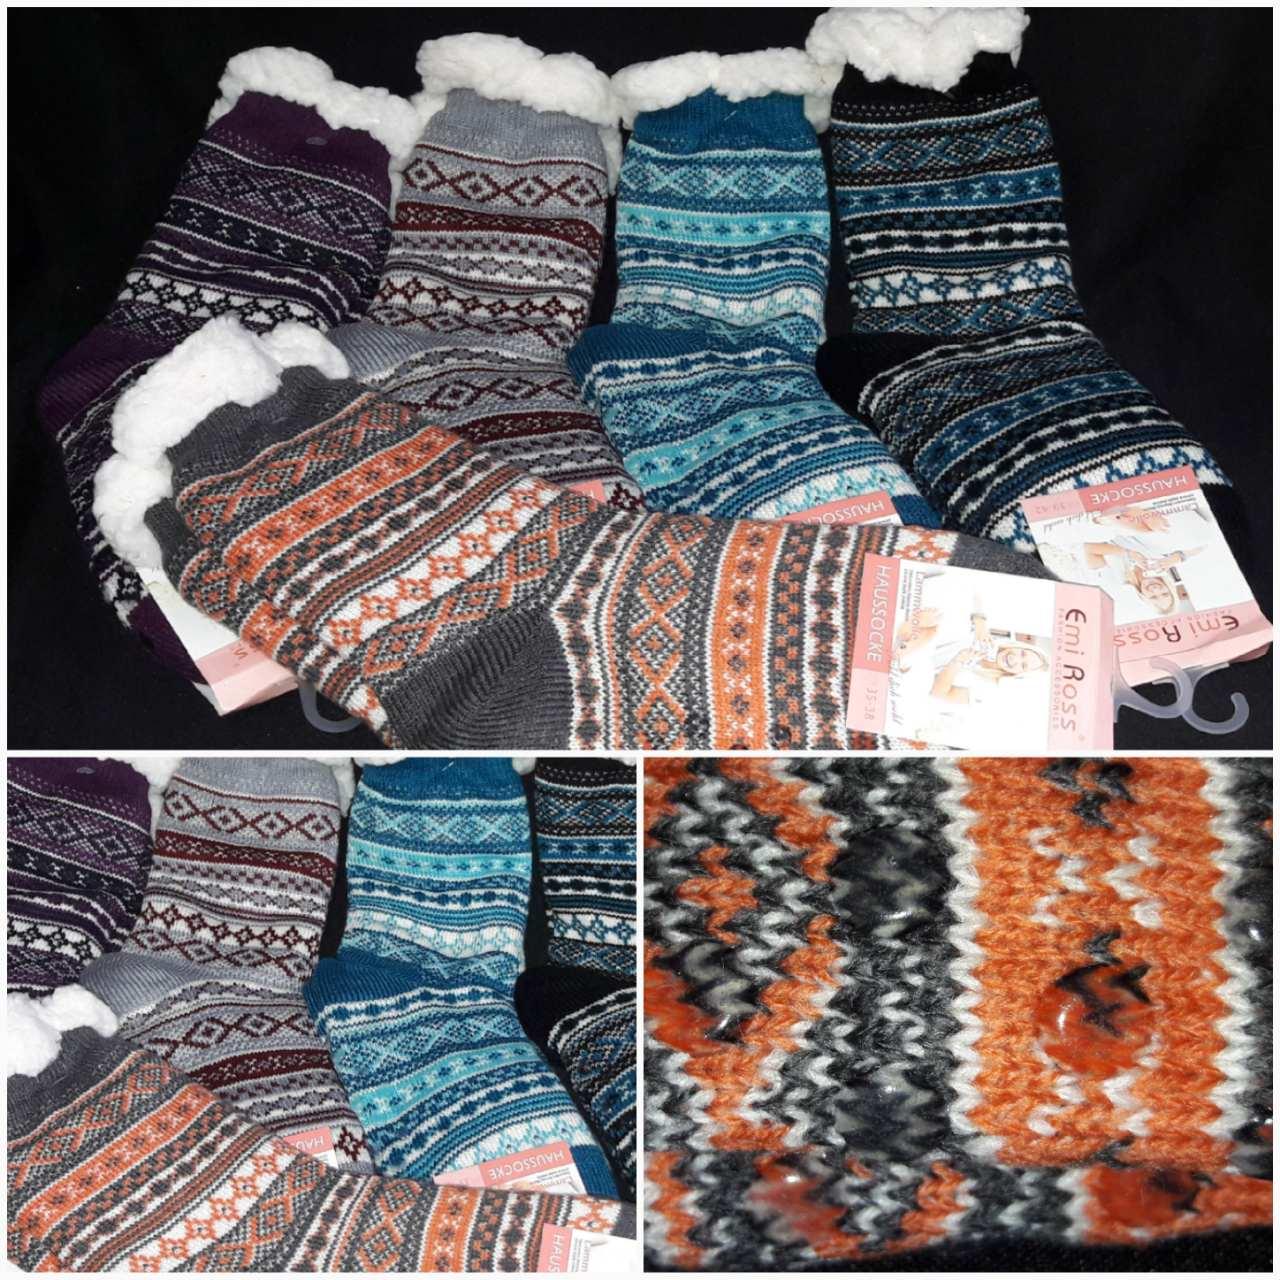 Зимові теплі шкарпетки для жінок, хутро, малюнок різний, 35-38 р-ри, 205/143